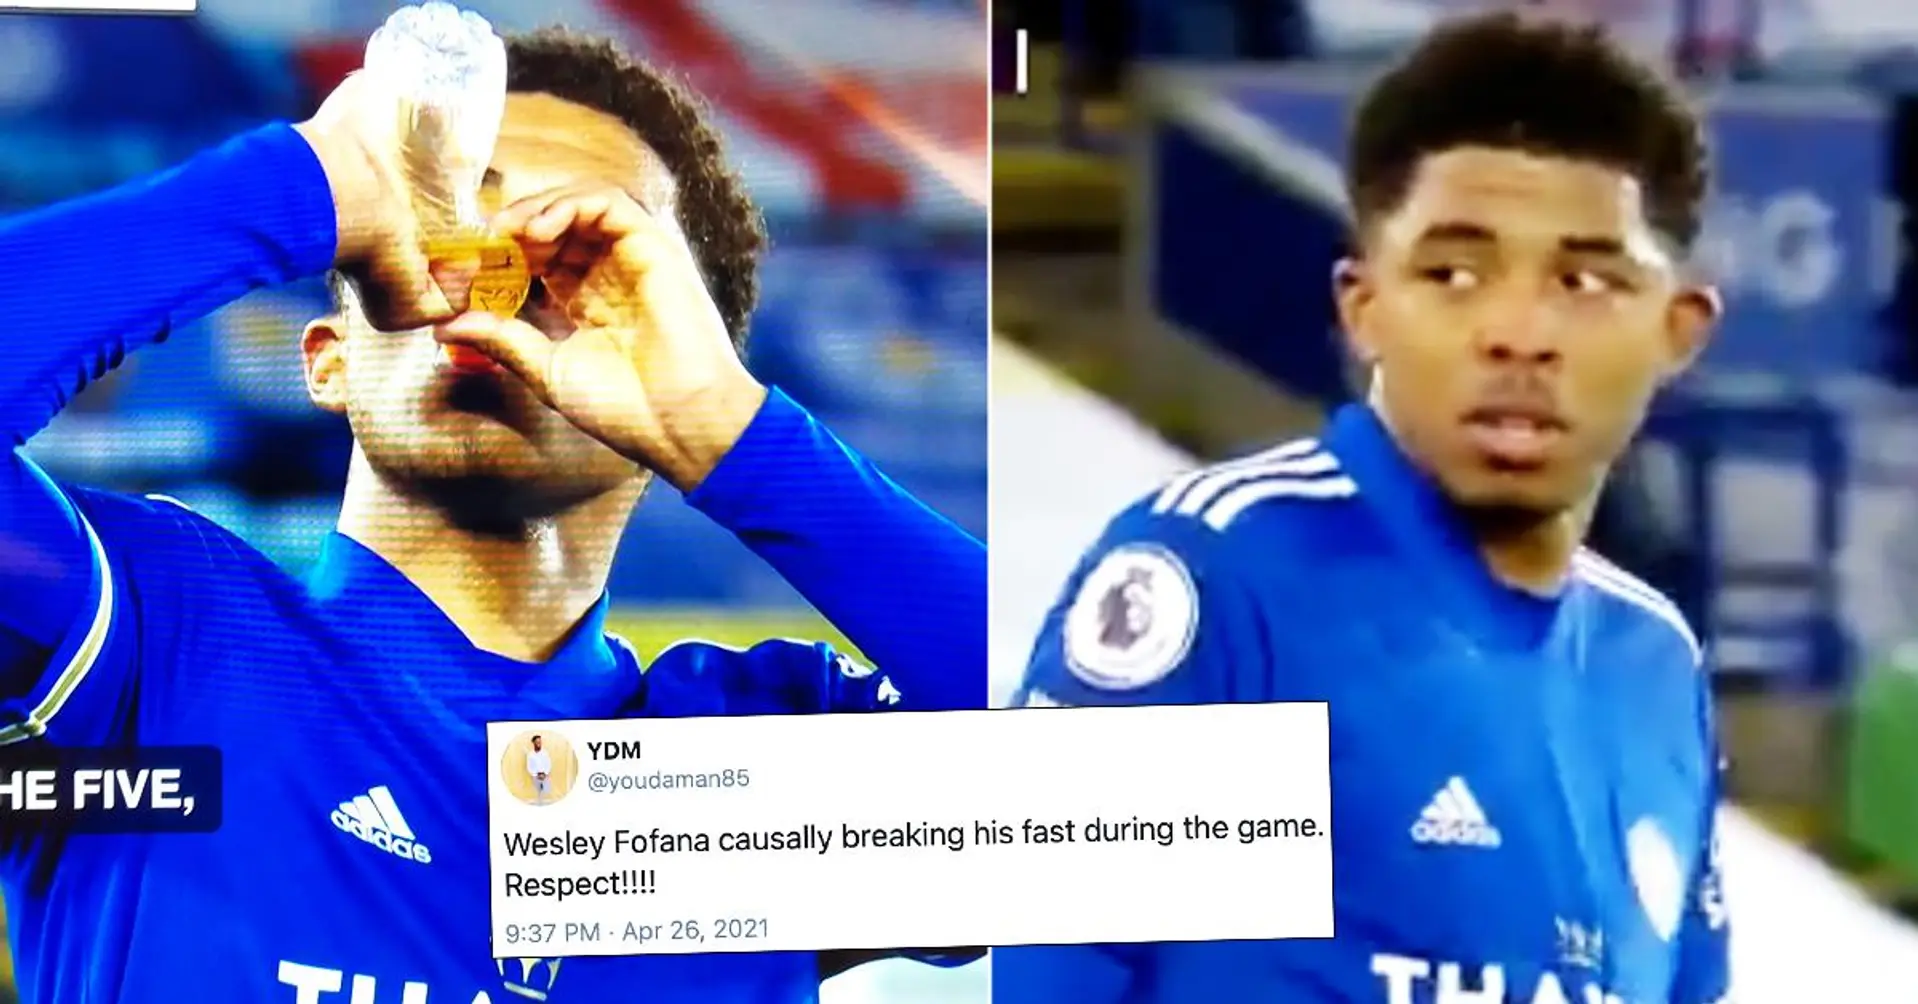 La star de Leicester Fofana brise le jeûne du Ramadan lors d'un match de Premier League